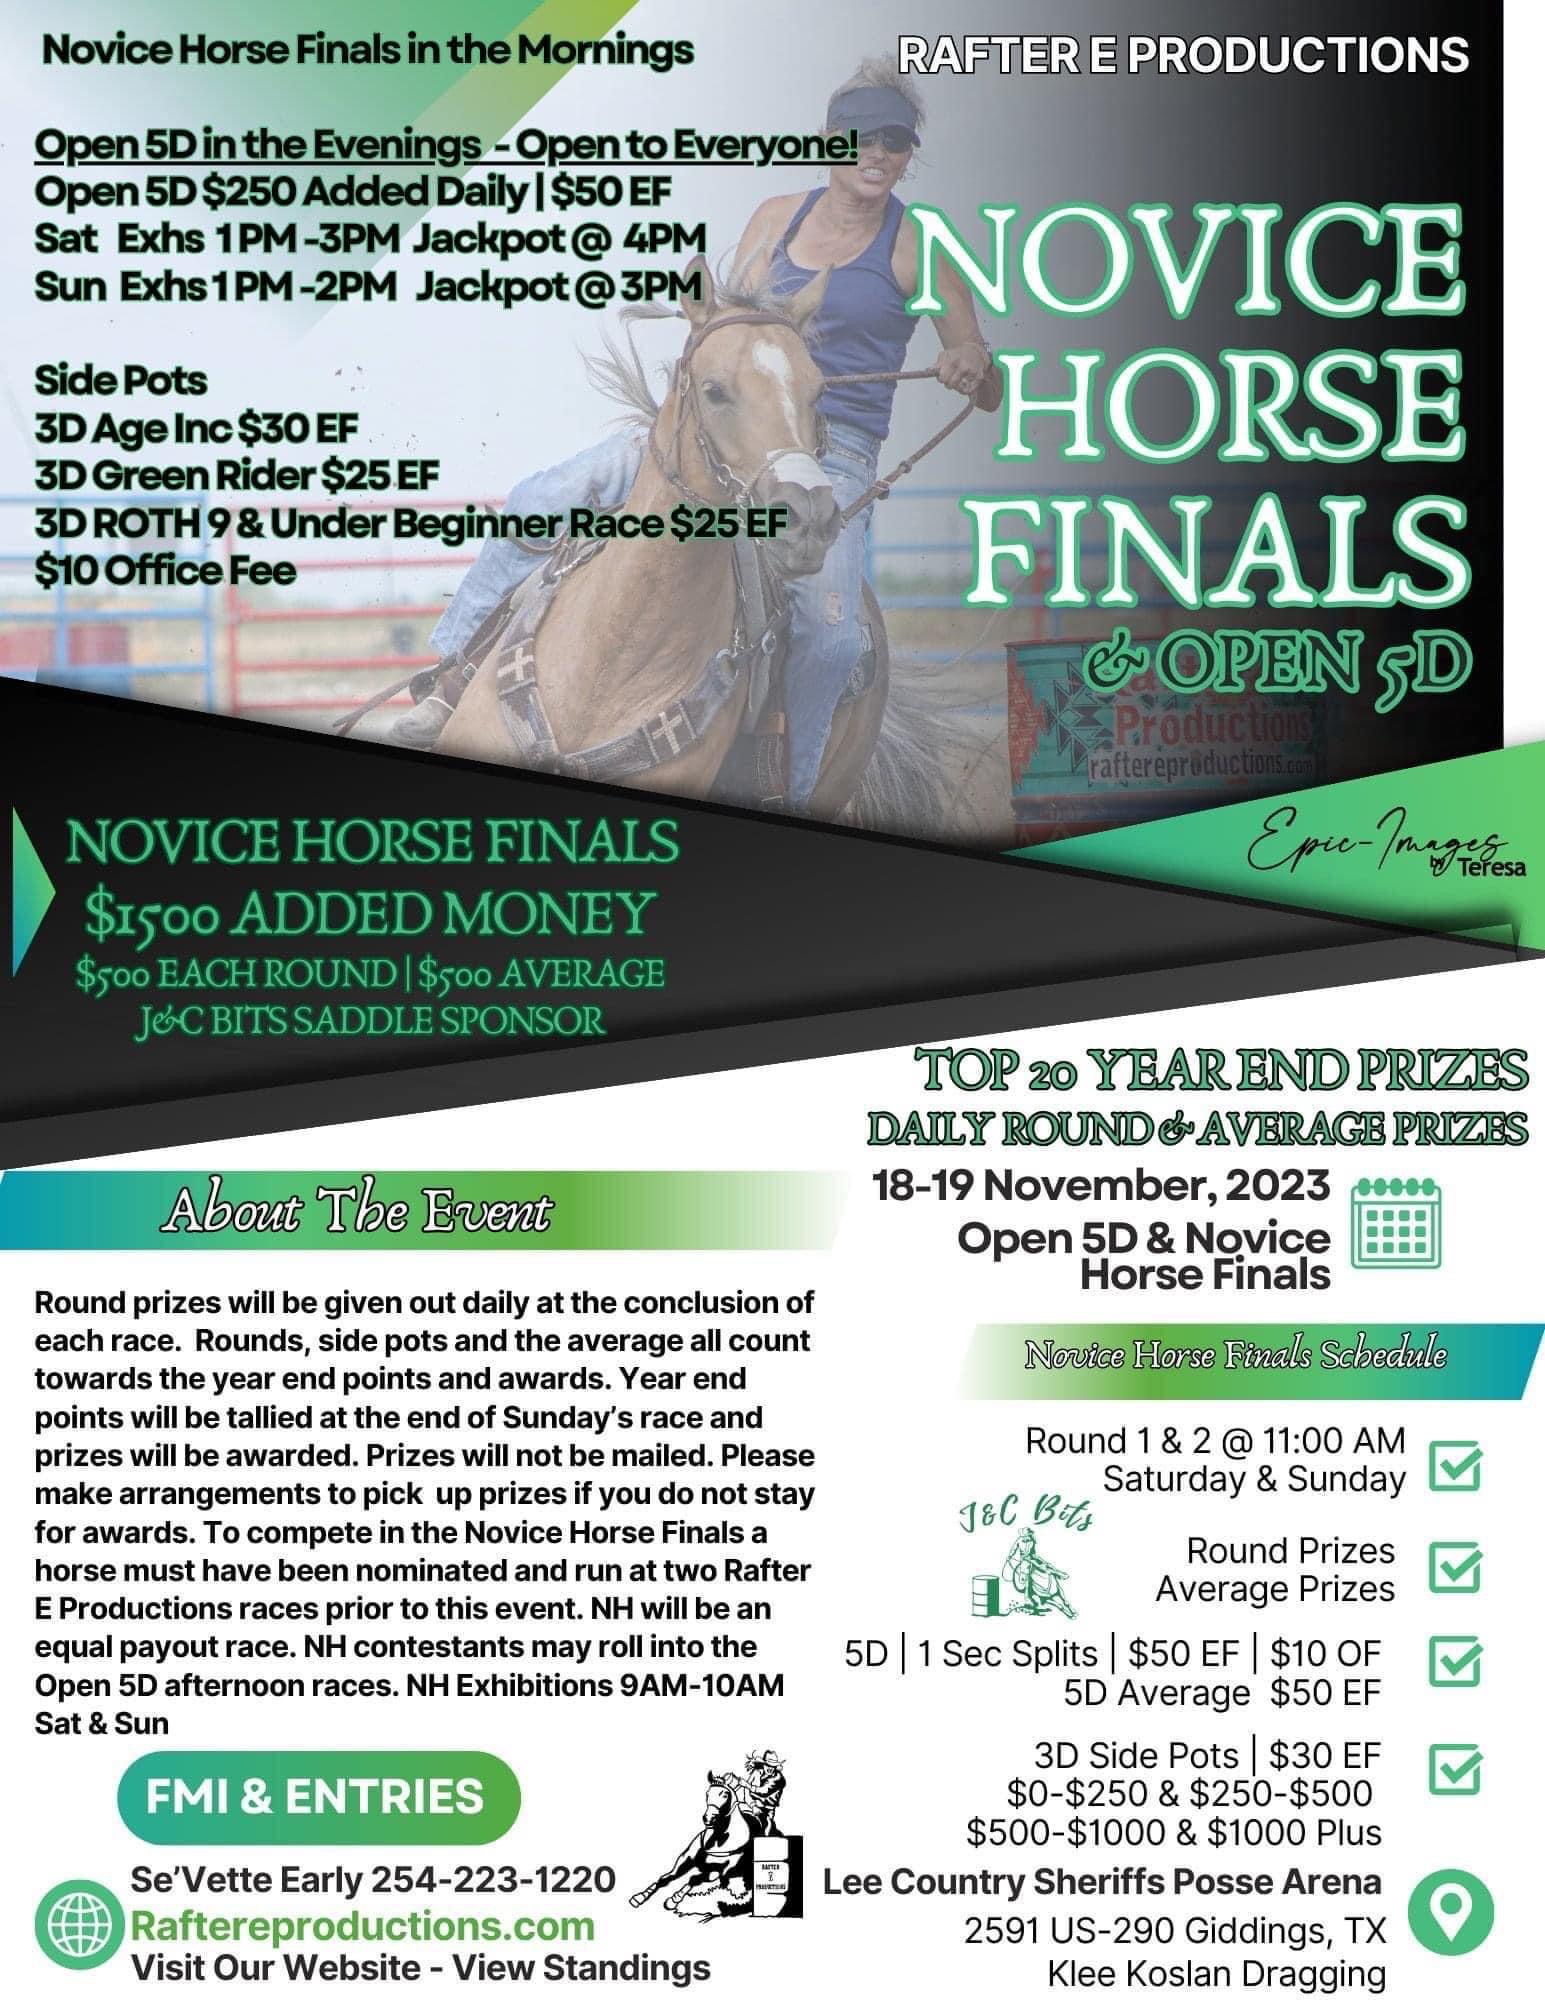 Novice Horse Finals & Open 5D